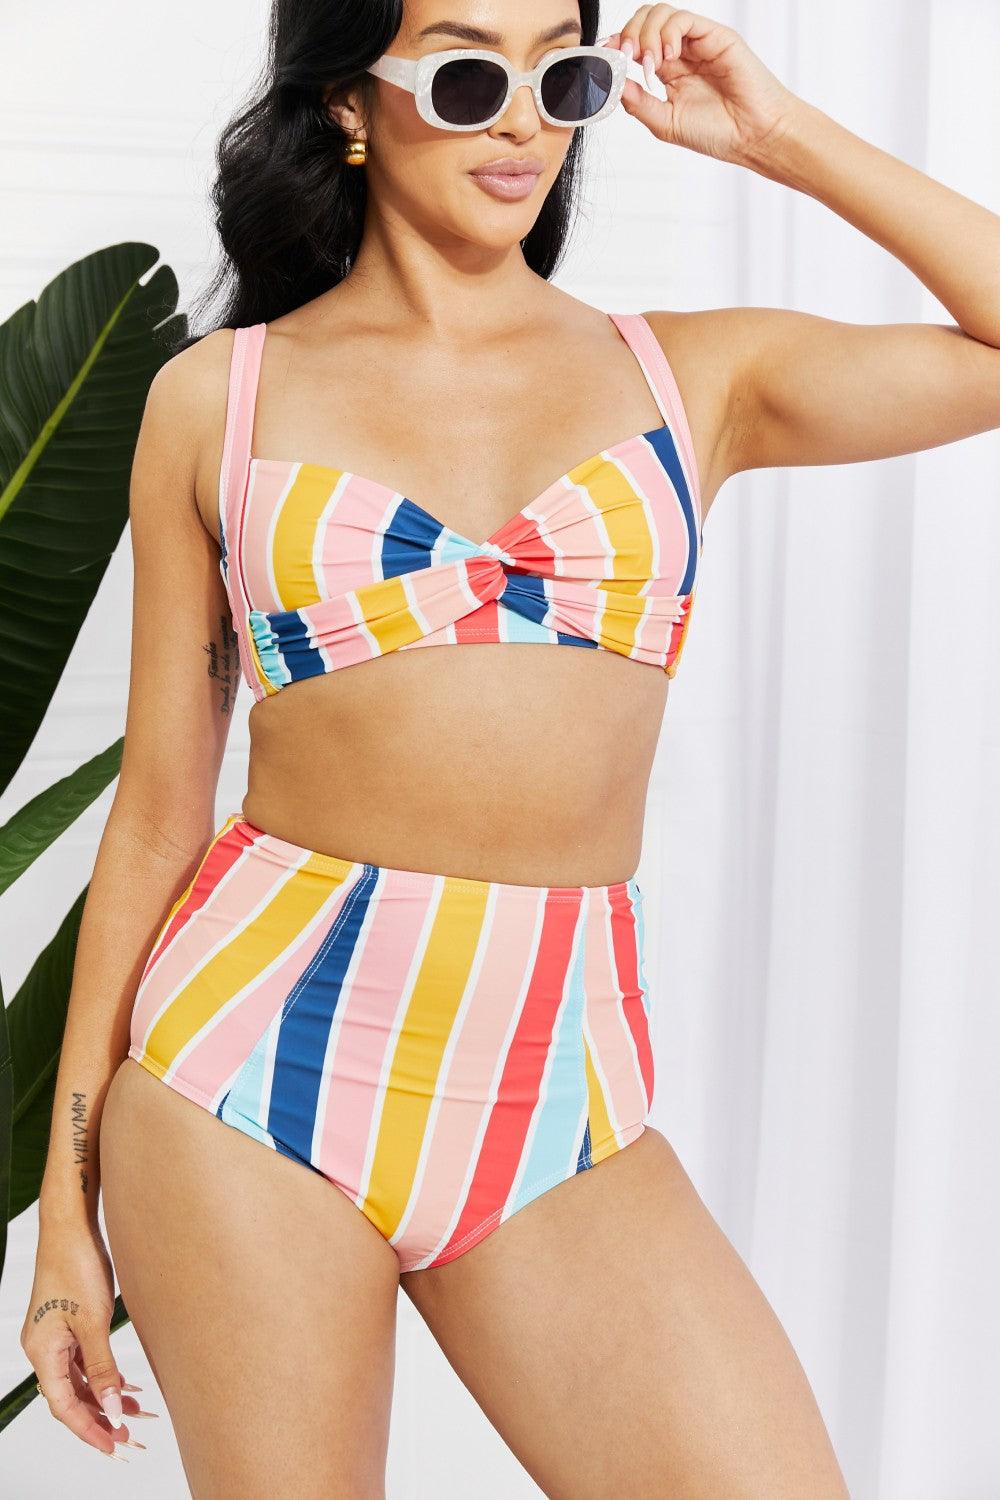 Marina West Swim Take A Dip Twist High-Rise Bikini in Stripe - Immenzive